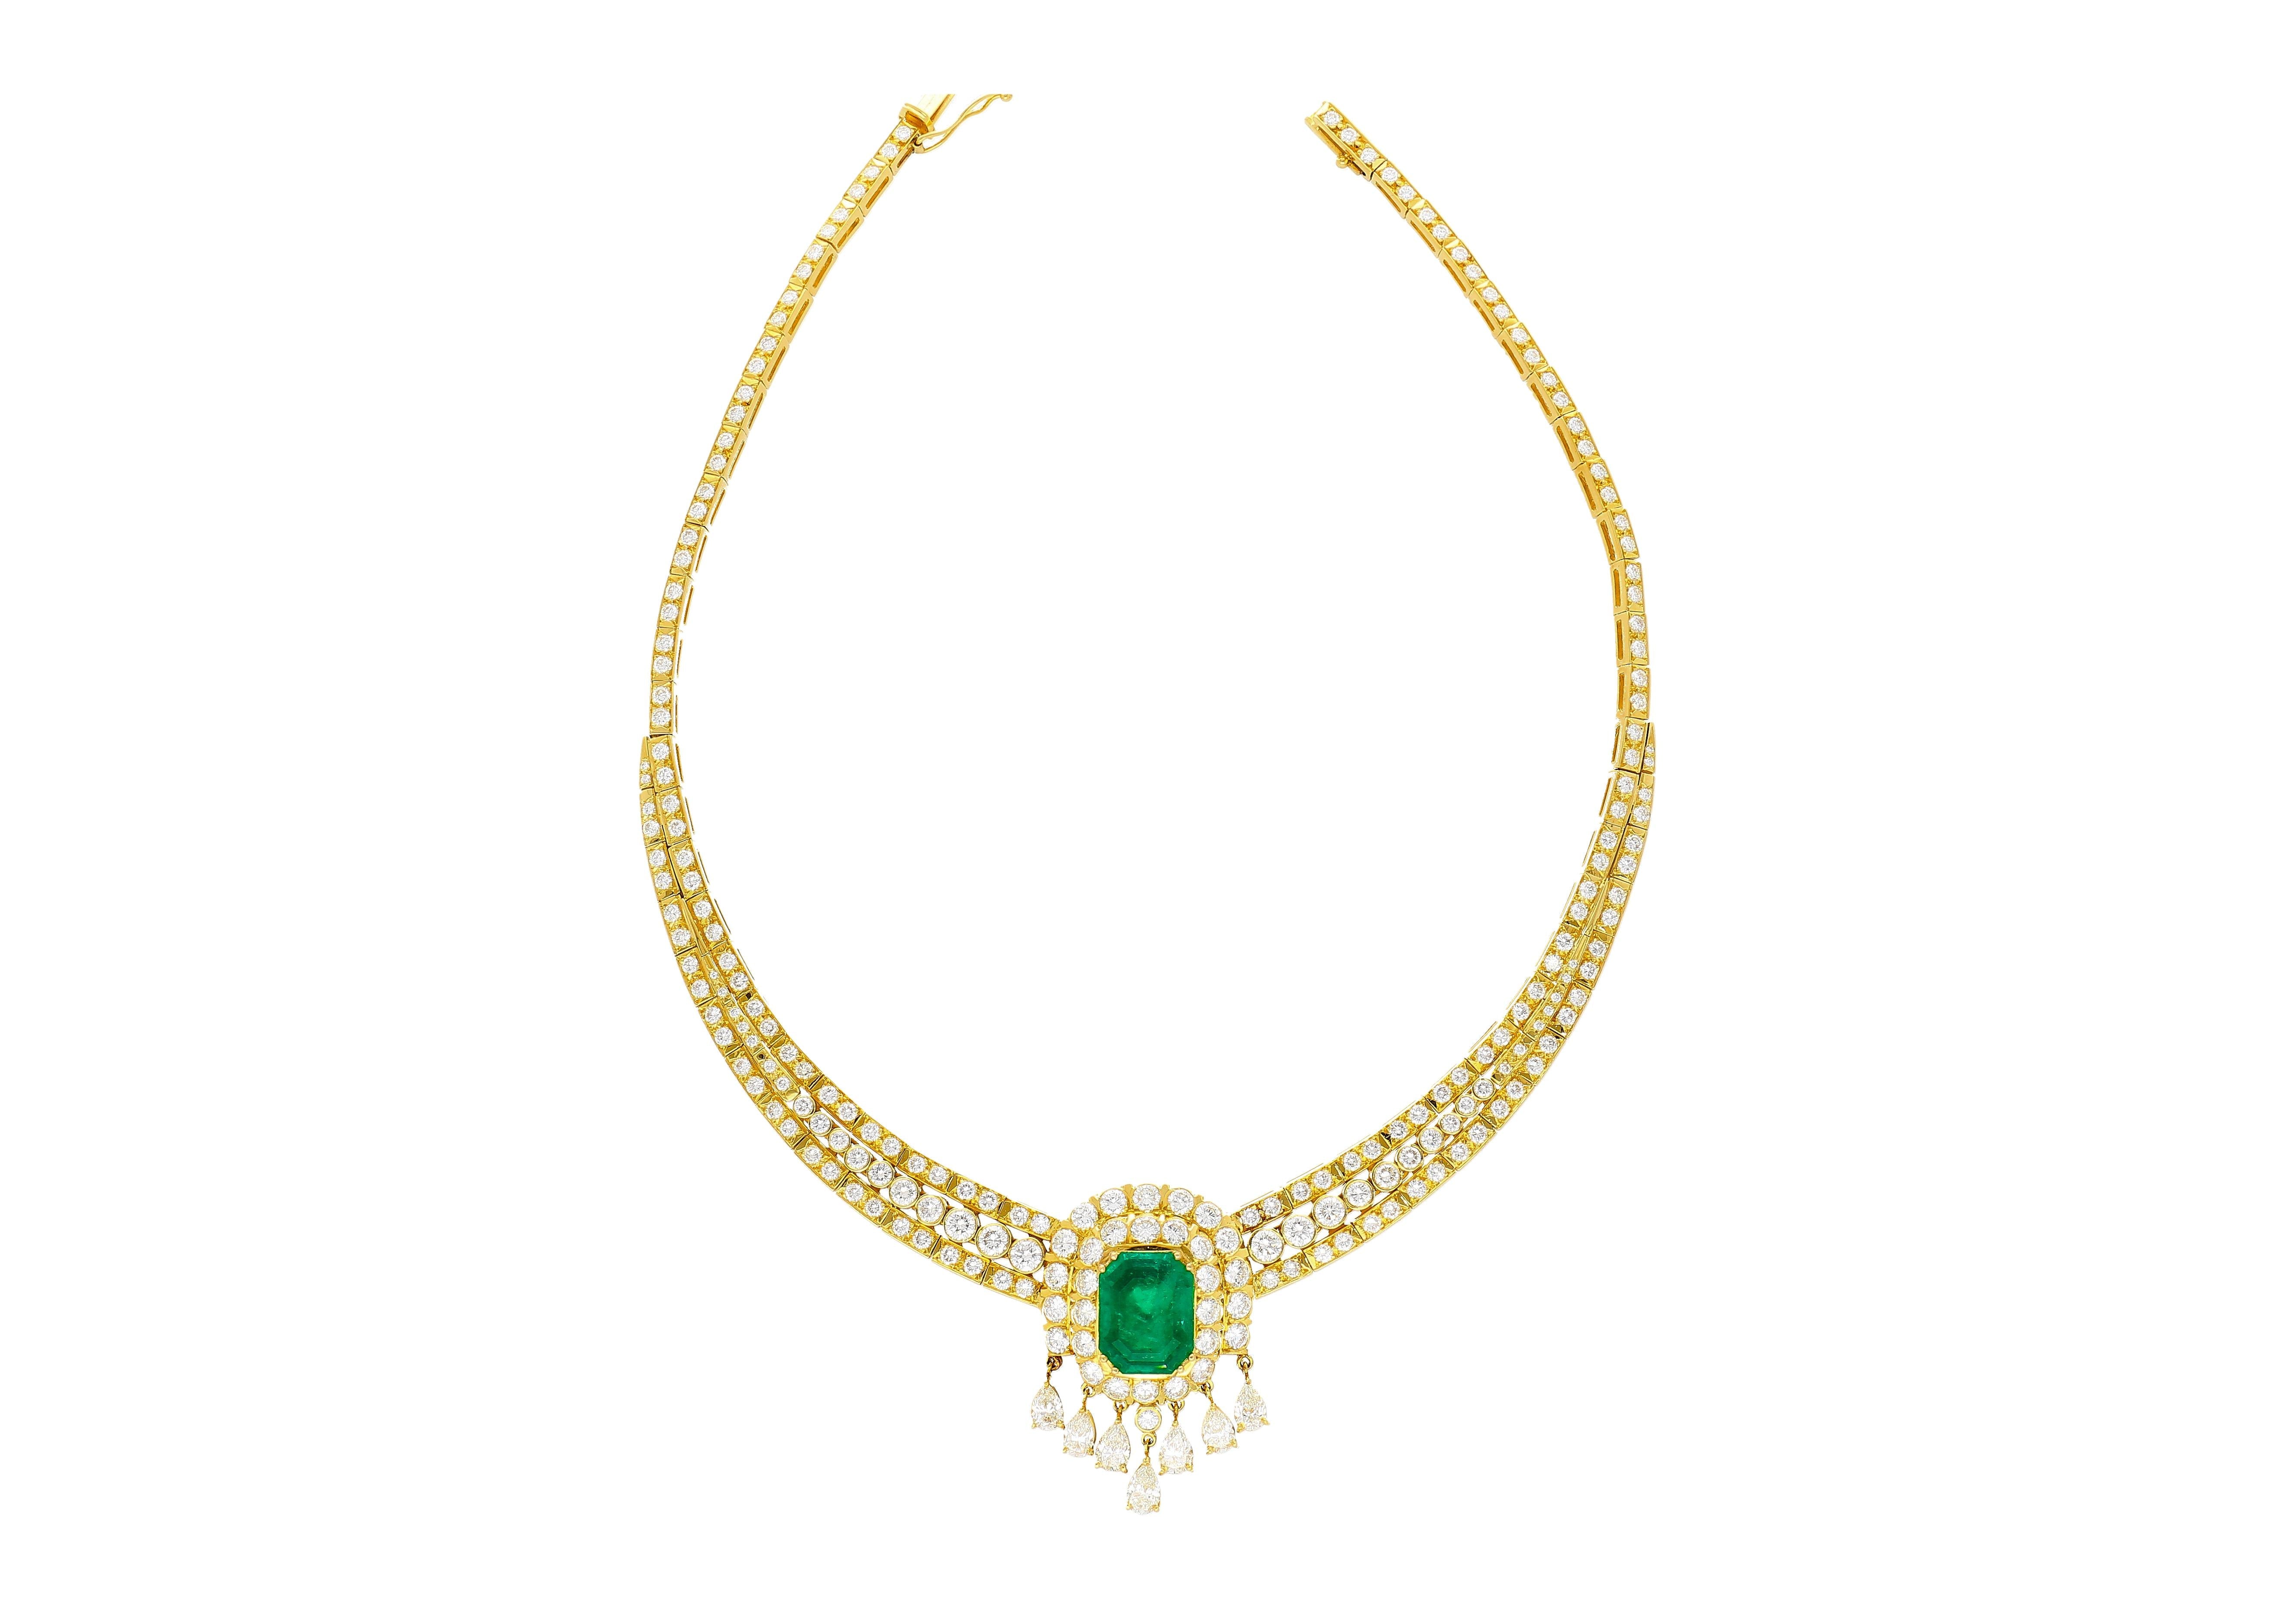 8.12 Carat Colombian Emerald & Diamond Chandelier Regal Choker Necklace in 18k